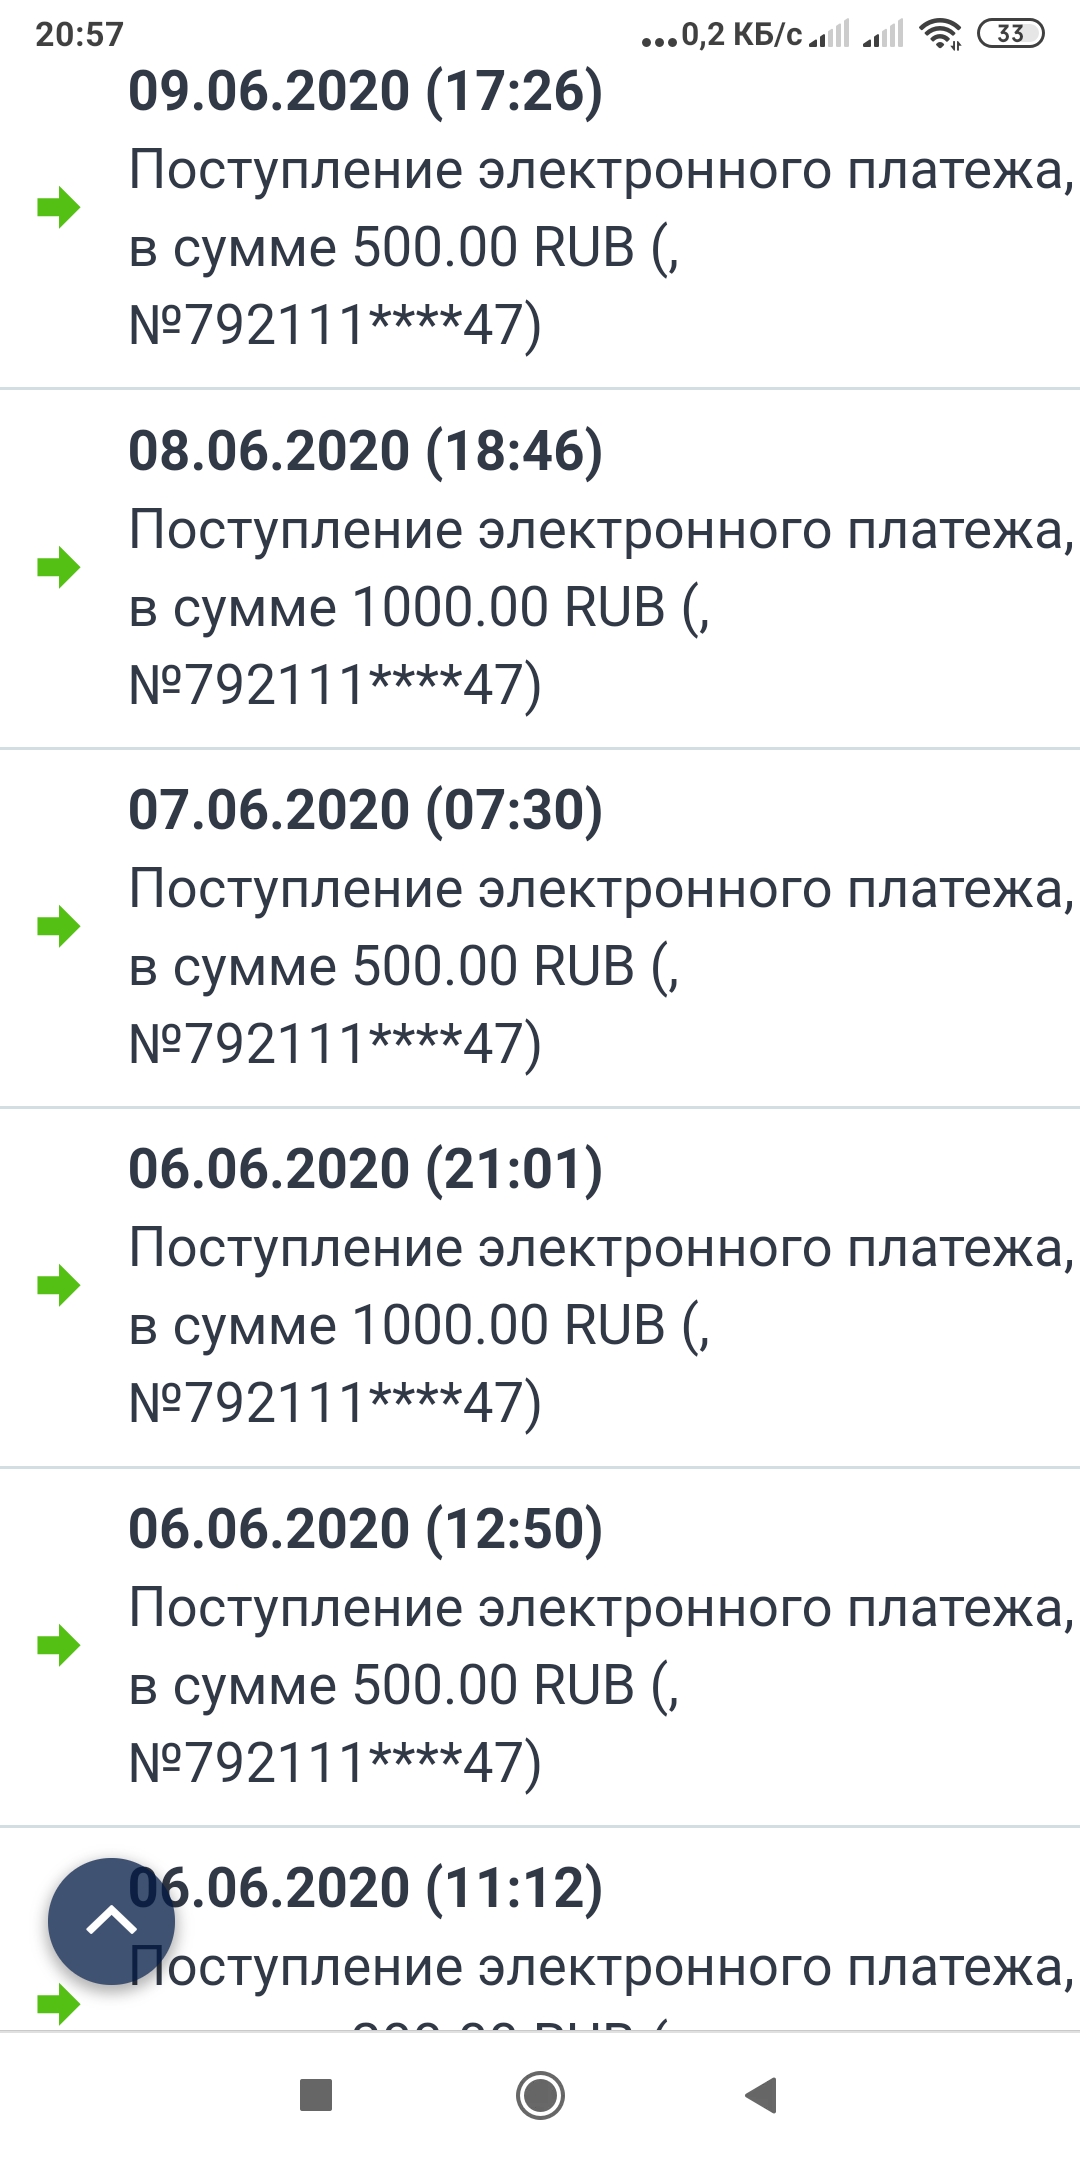 Screenshot_2020-06-10-20-57-44-401_com.android.chrome.jpg